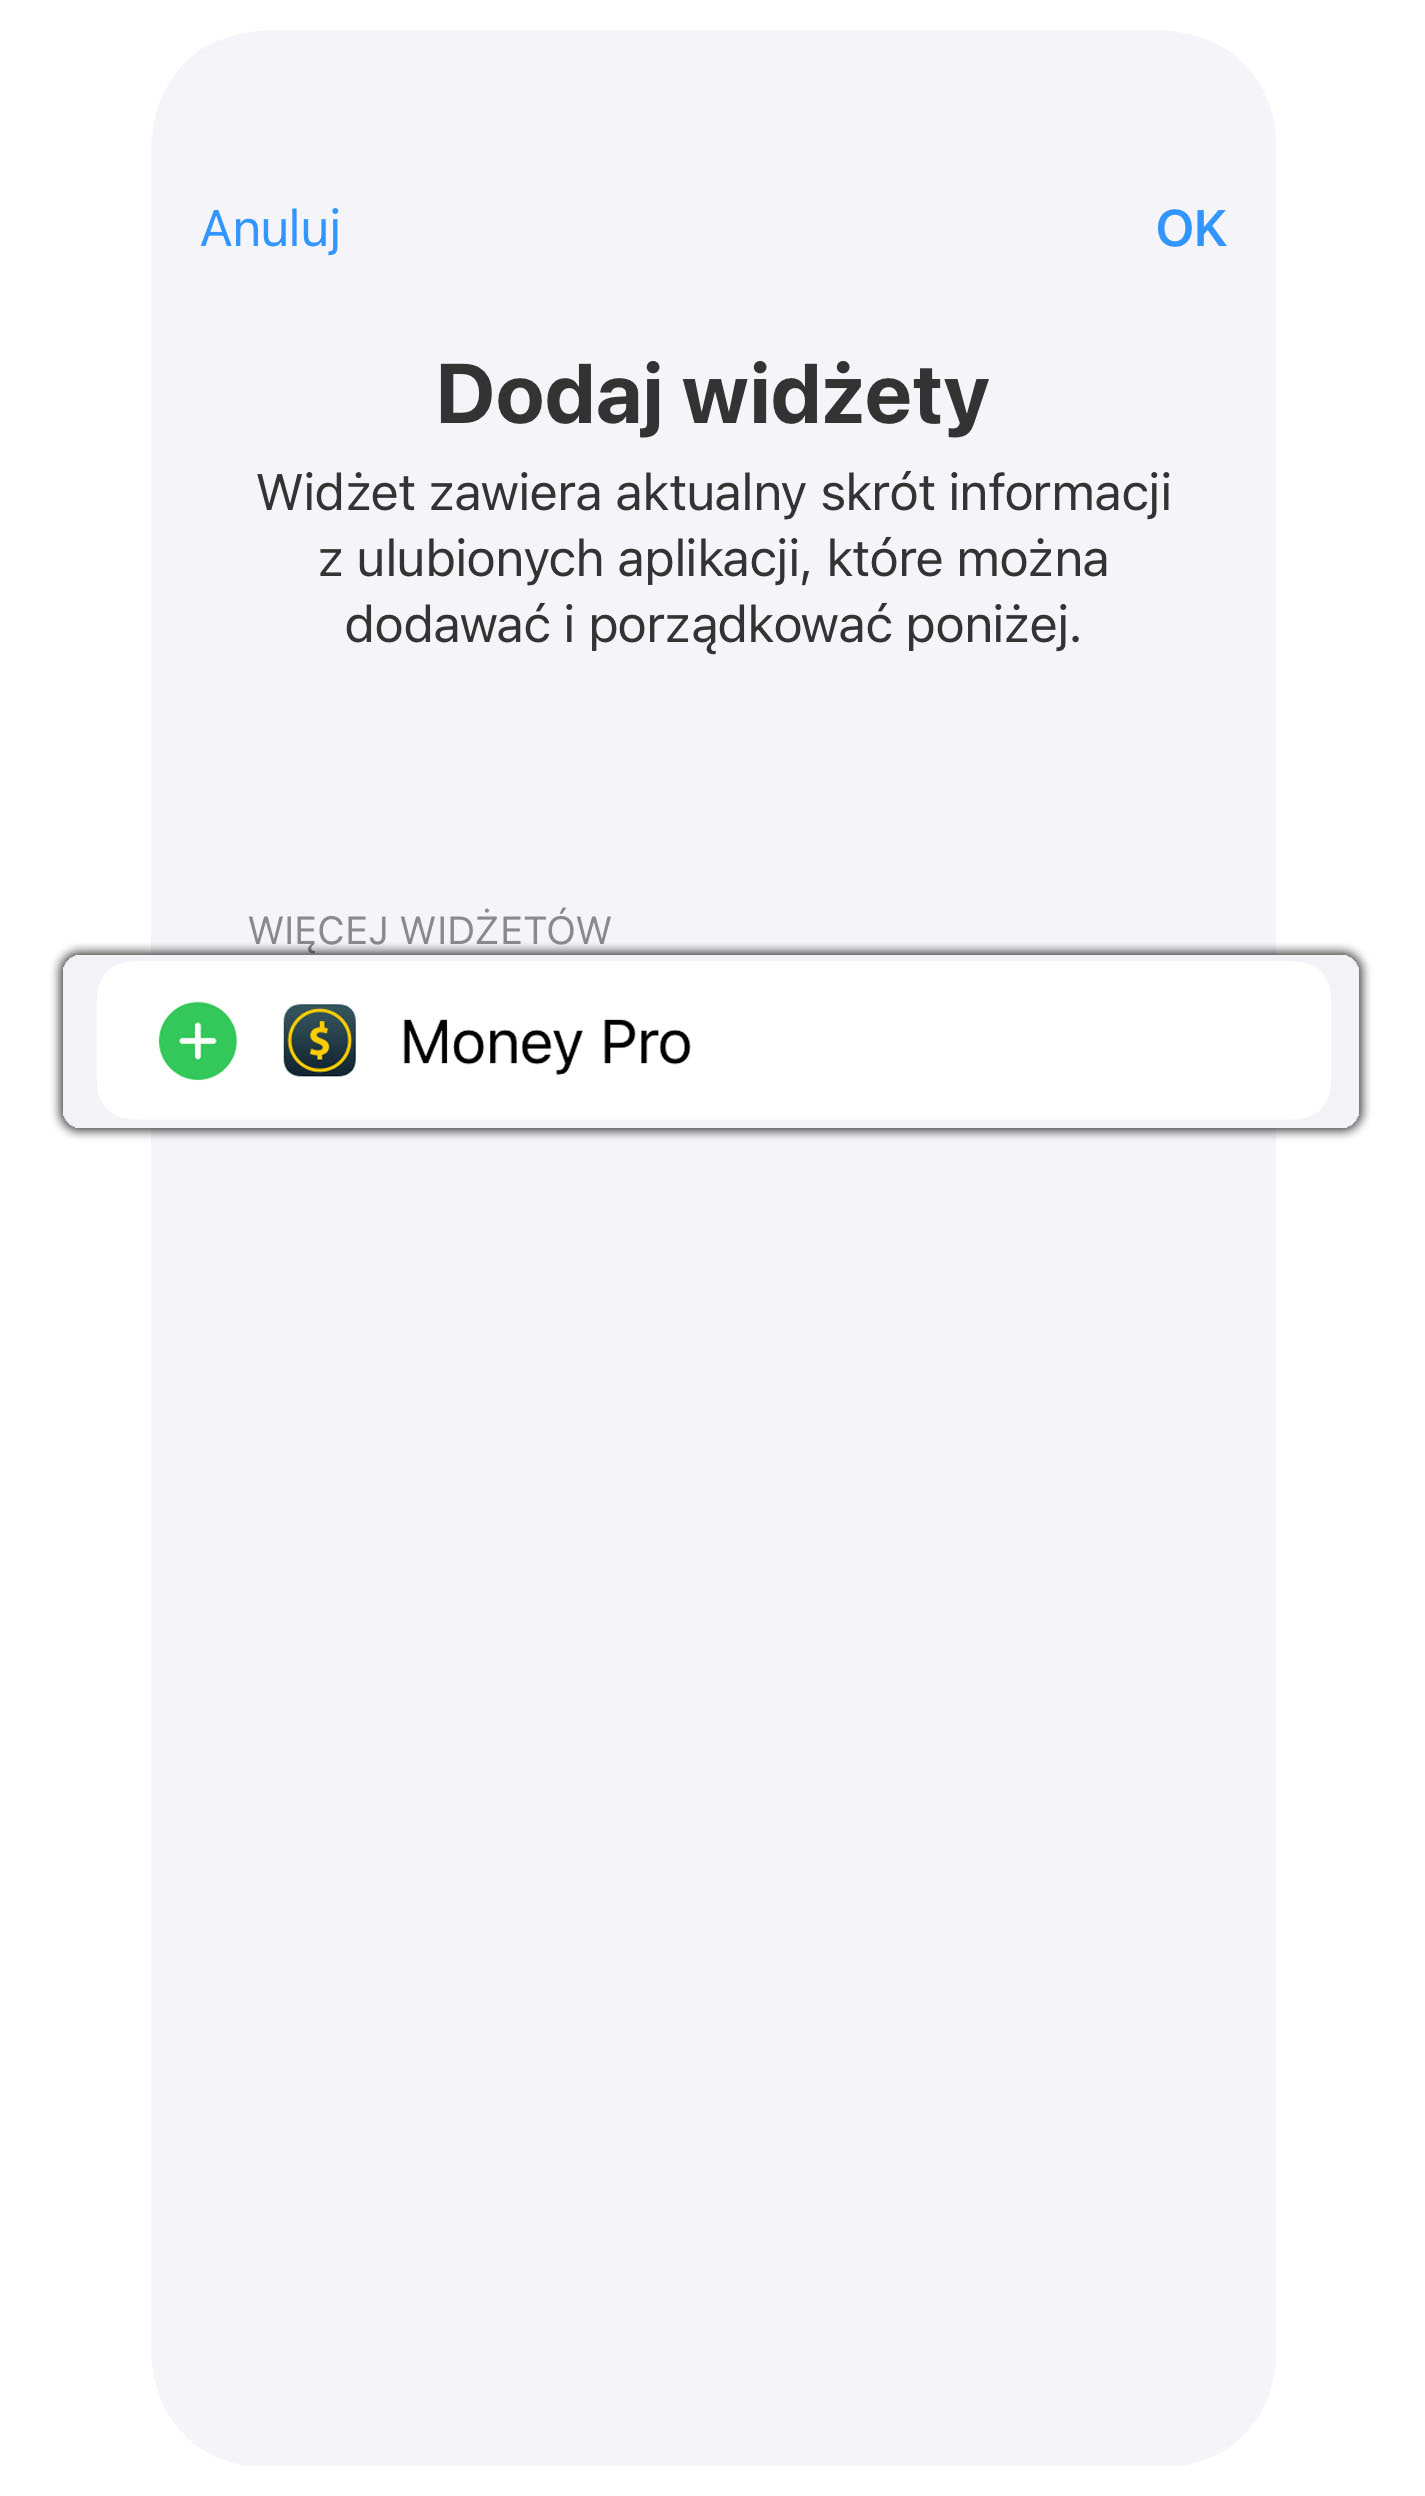 Money Pro - Widżet Dzisiaj - iPhone